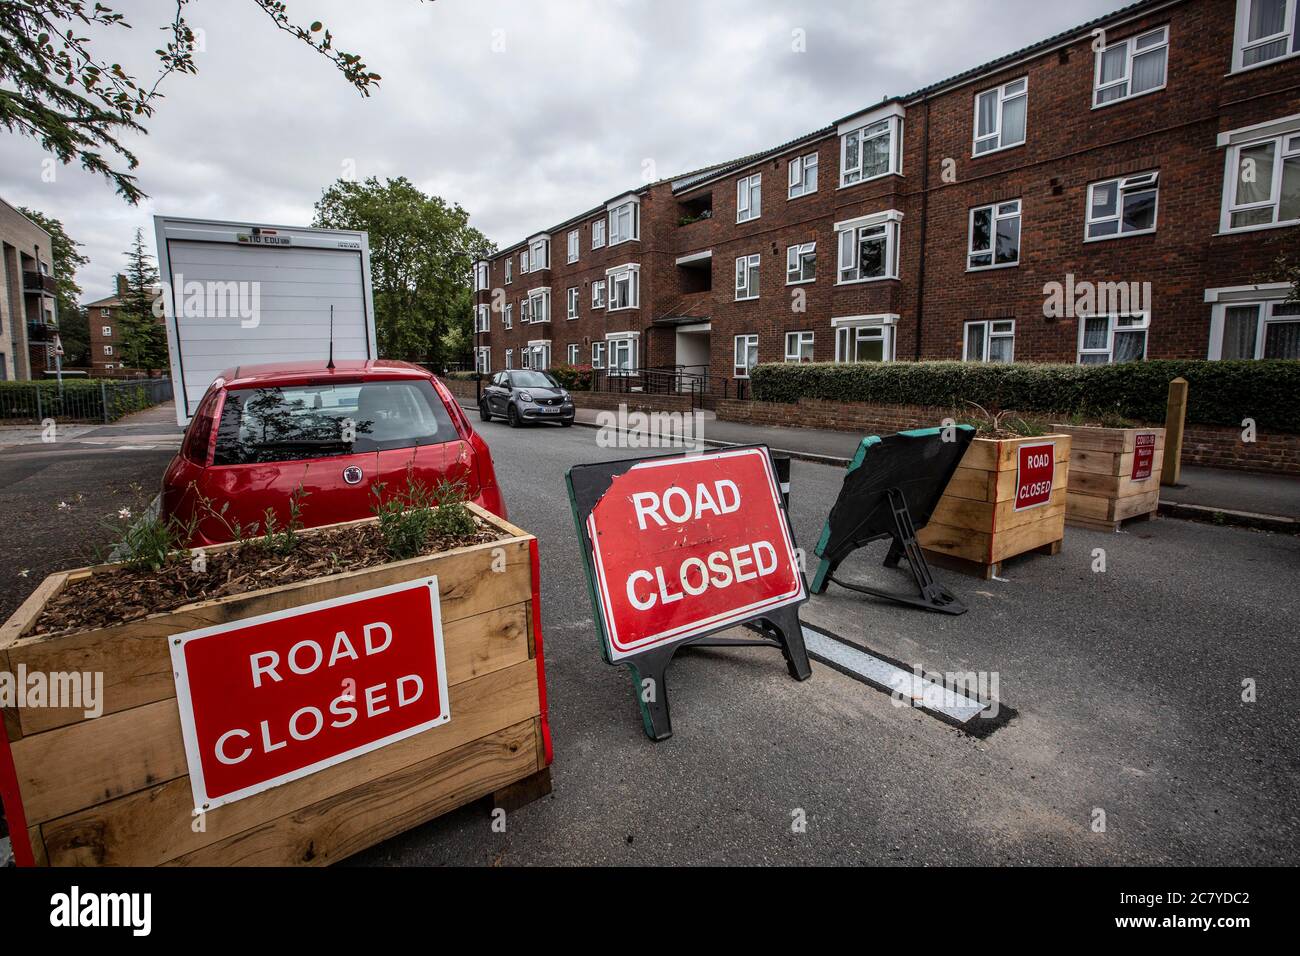 Las carreteras de Londres se bloquean para restringir el tráfico en su lugar para crear "carreteras de ciclo" y fomentar el ciclismo y reducir la contaminación del aire en George Lane, Lewsiahm SE13 6HQ Foto de stock